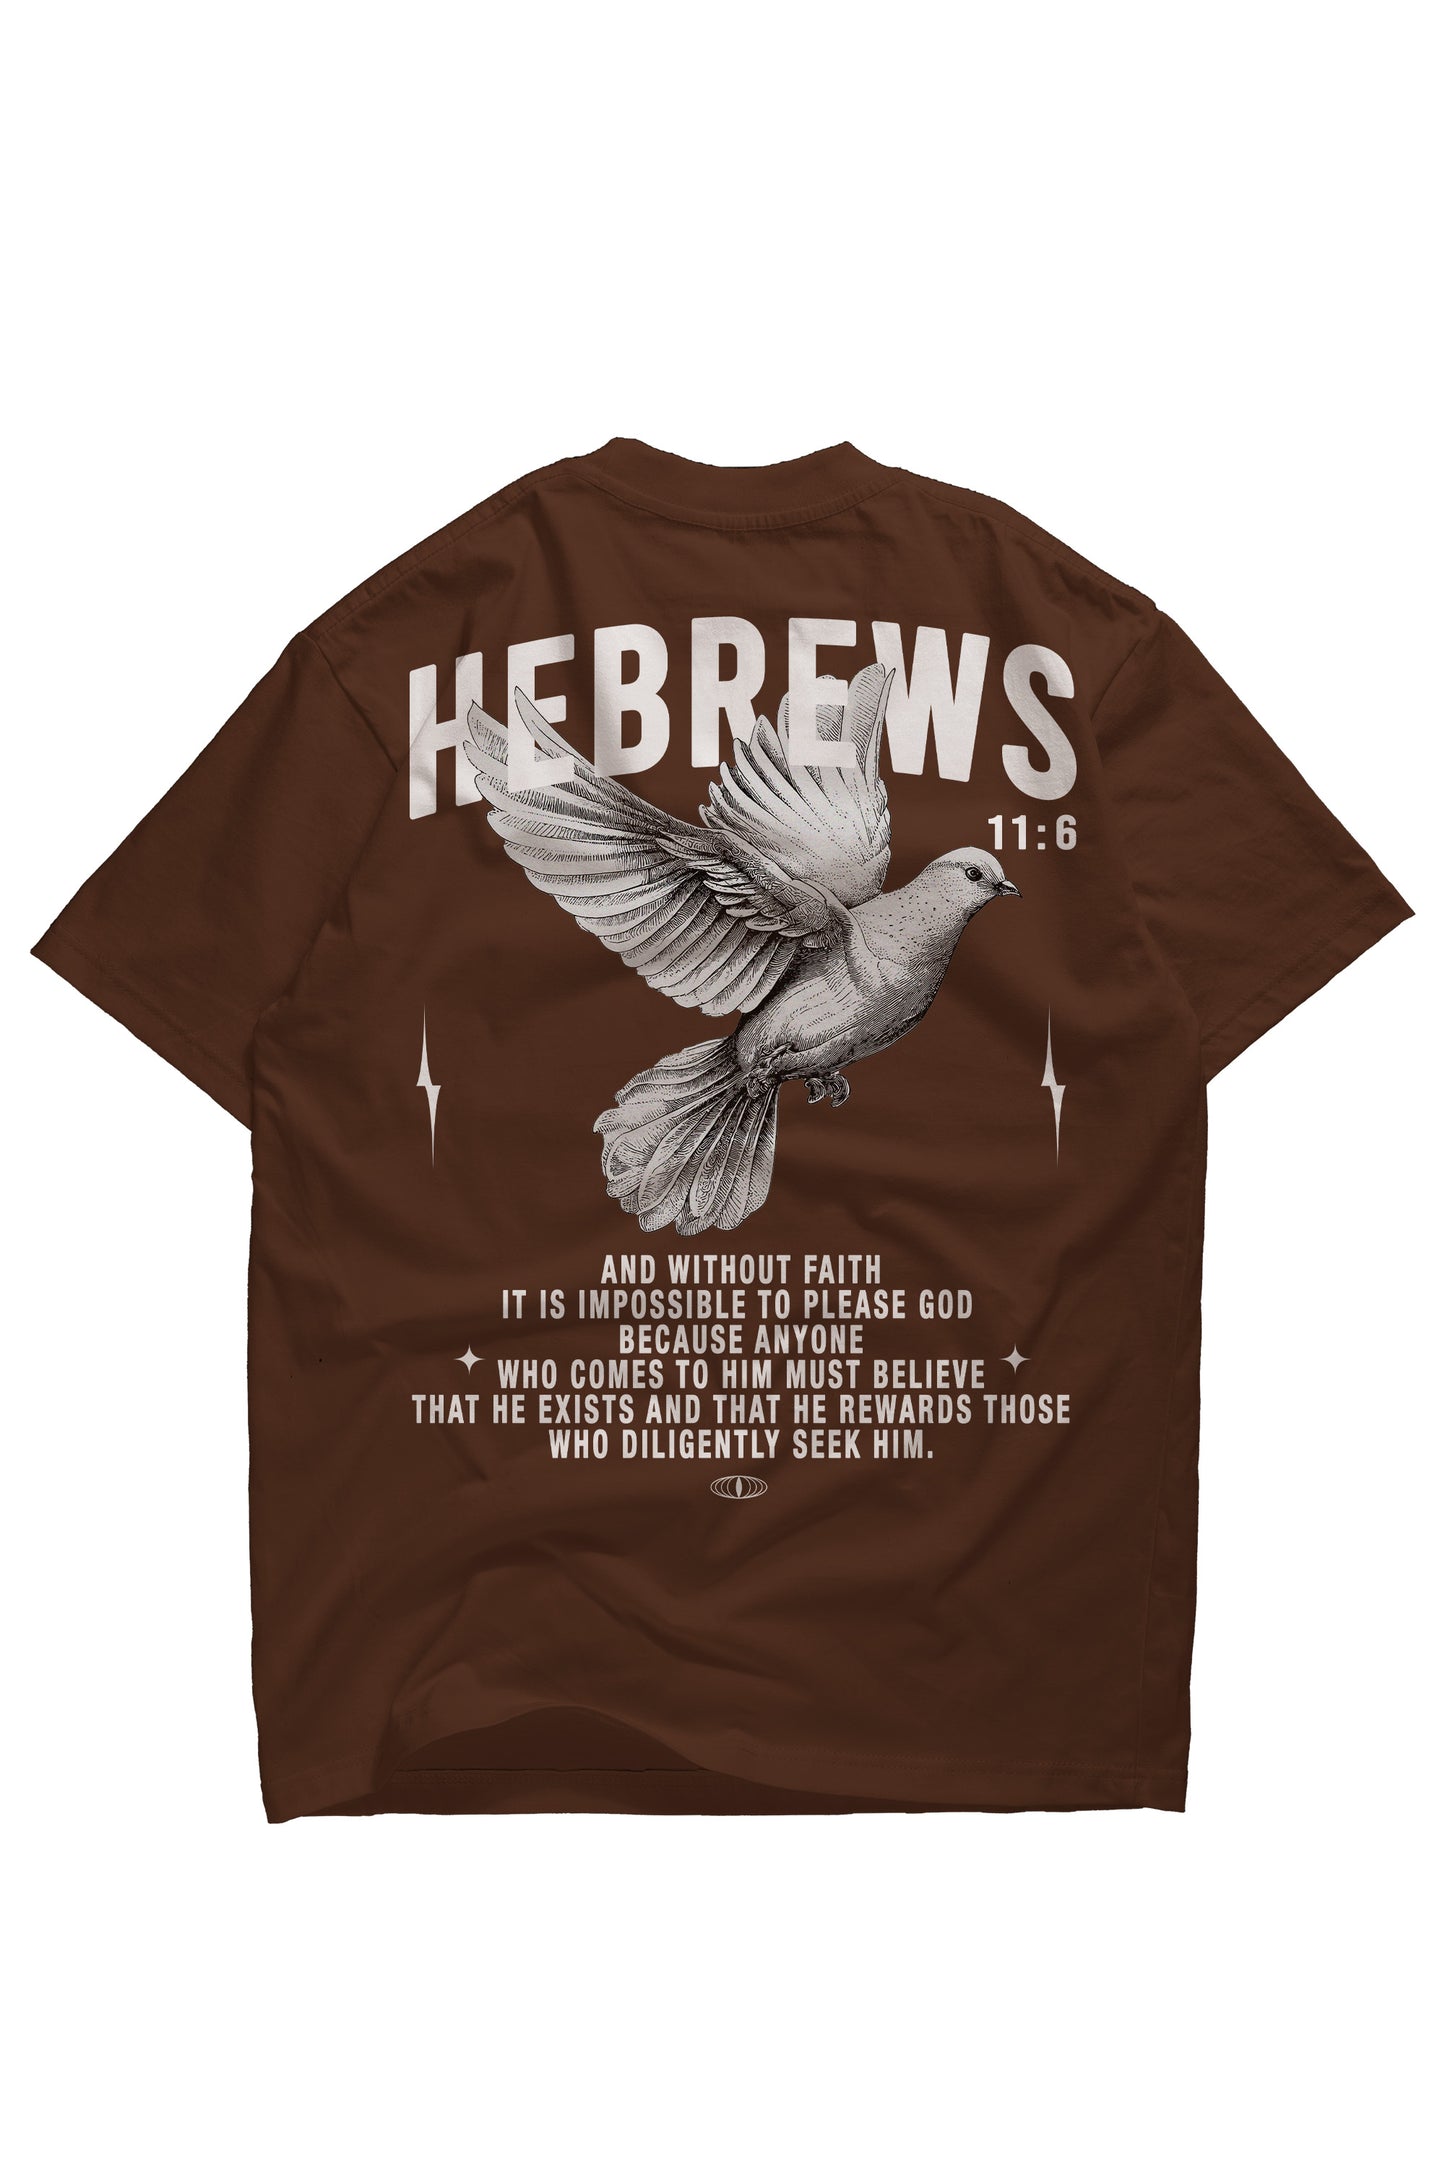 Hebrews 11:6 Heavyweight T-shirt